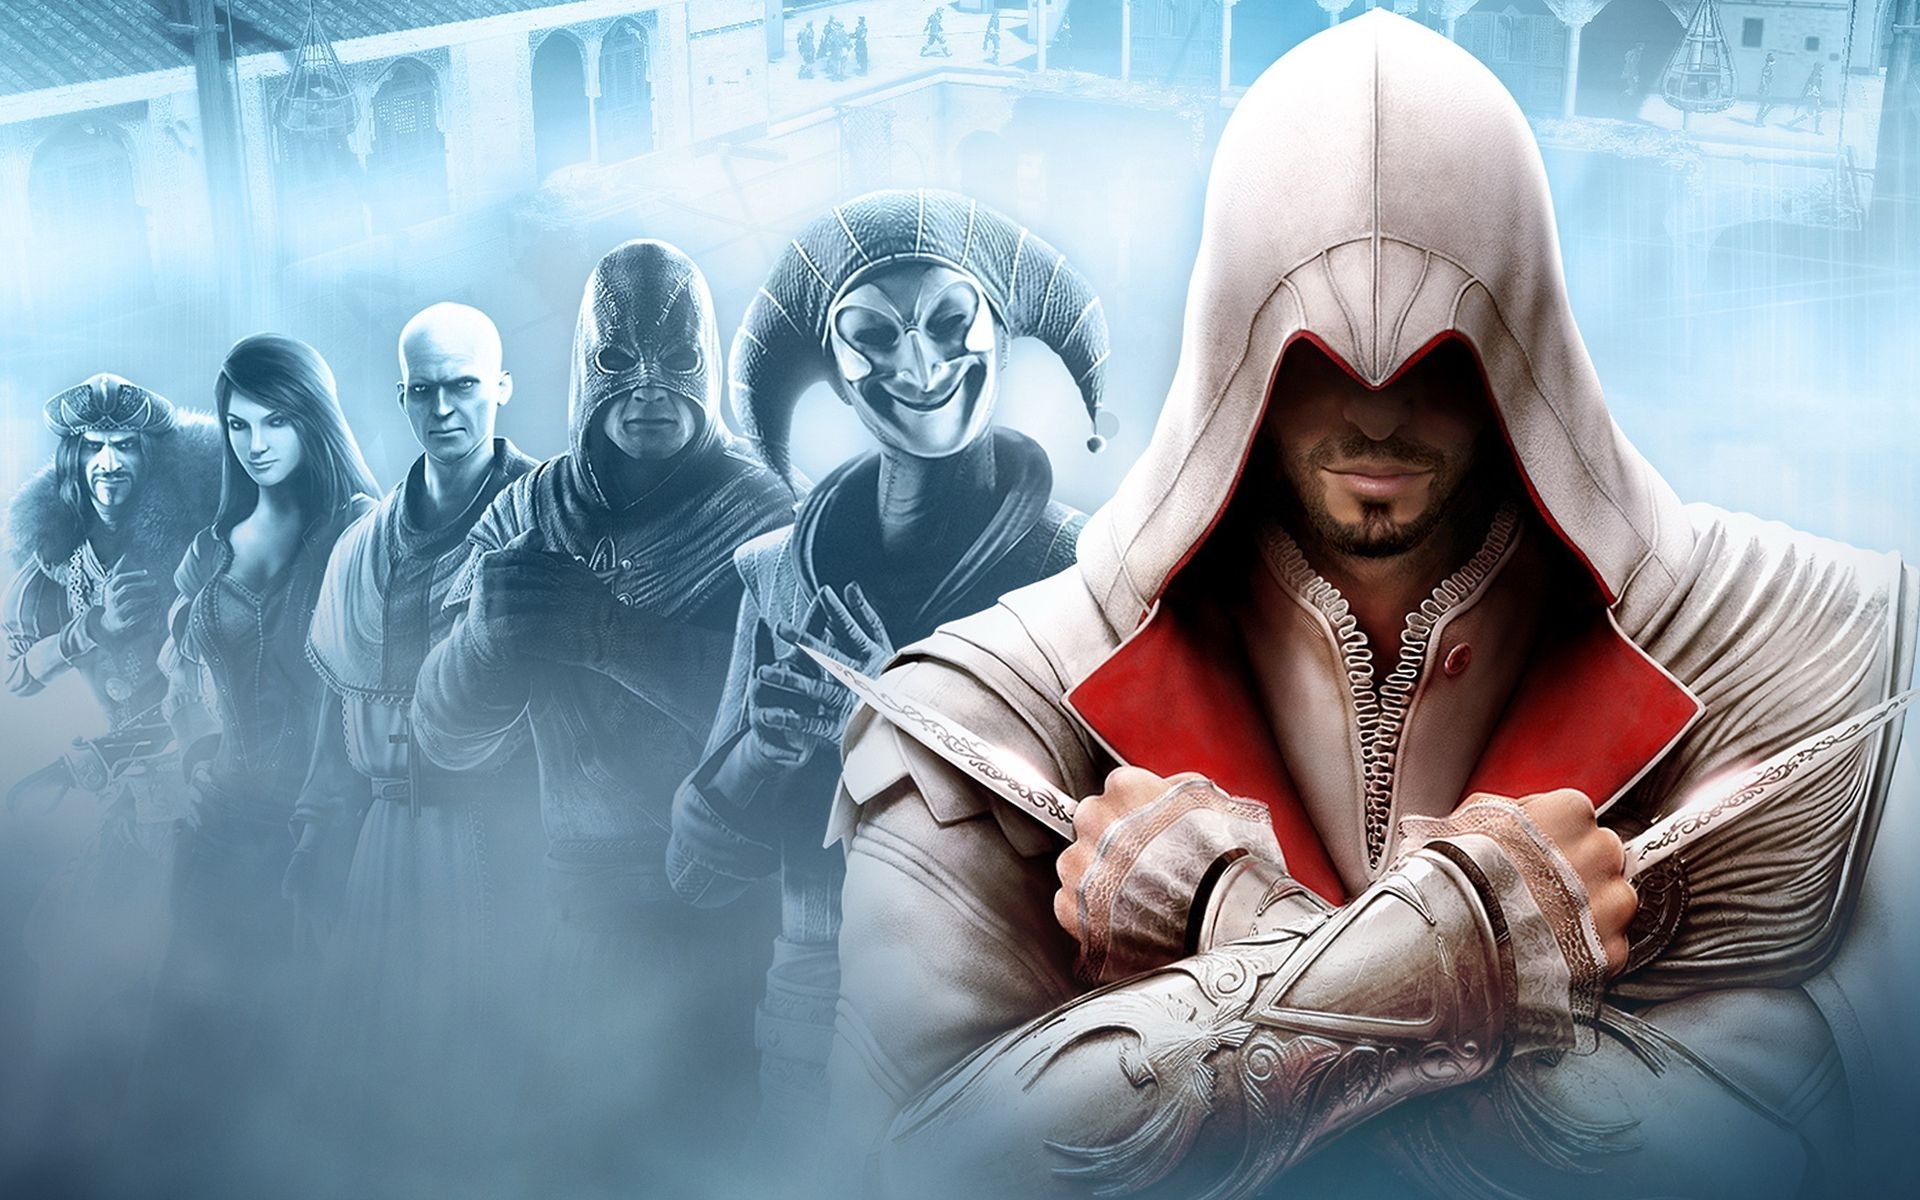 Скачать обои бесплатно Кредо Убийцы (Assassin's Creed), Игры картинка на рабочий стол ПК